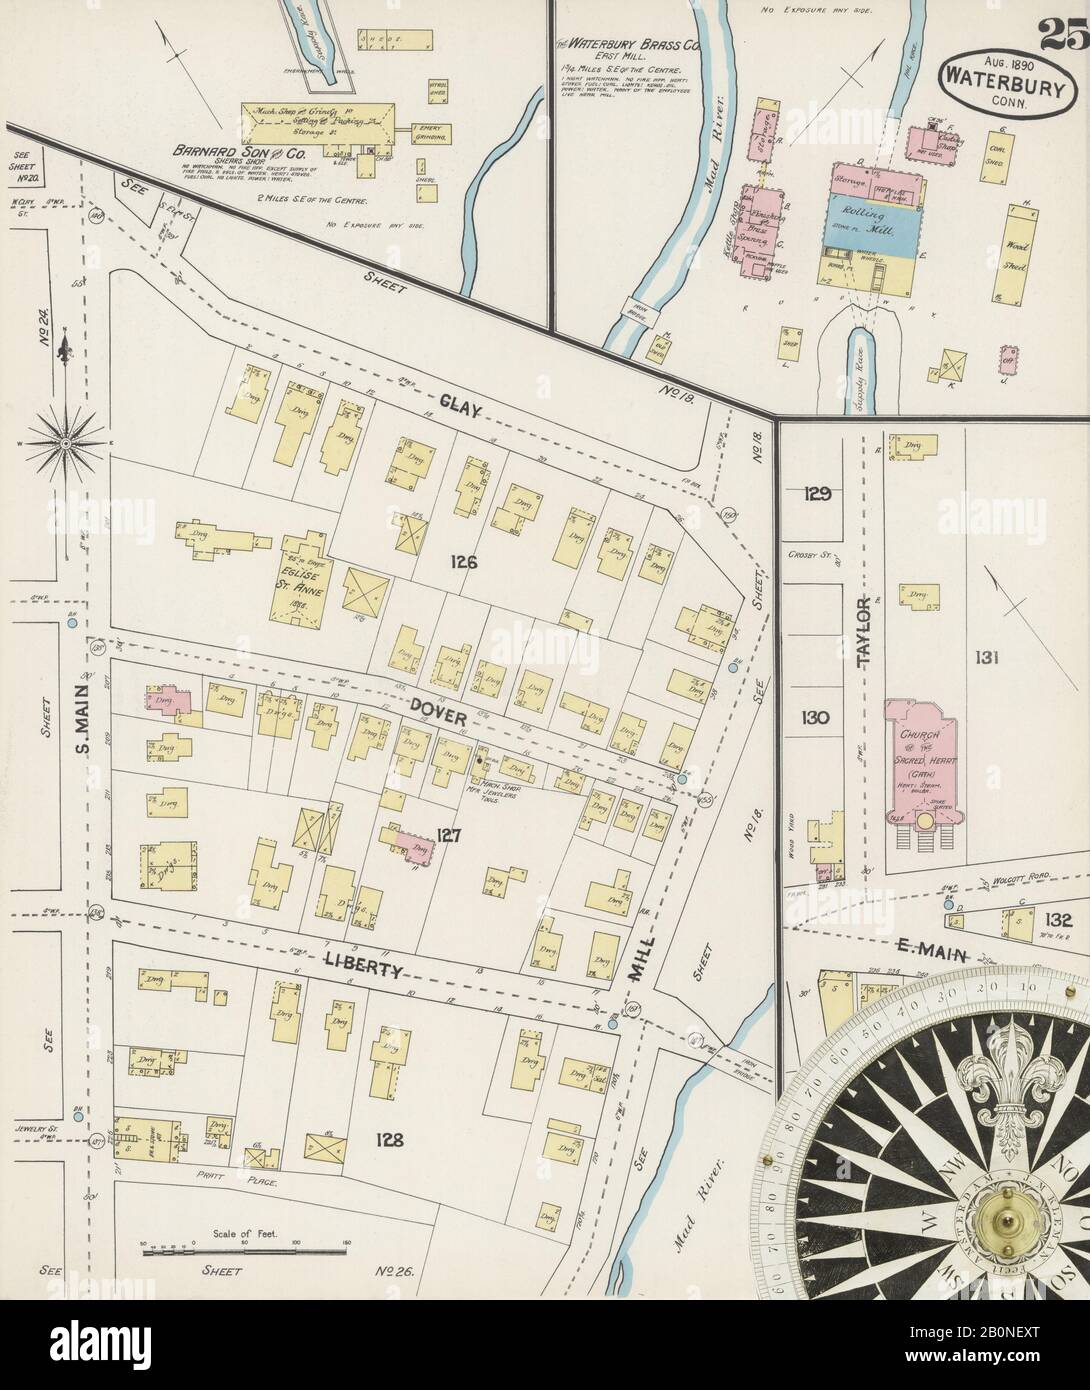 Imagen 25 De Sanborn Fire Insurance Map De Waterbury, Condado De New Haven, Connecticut. Ago 1890. 31 Hoja(s), América, mapa de calles con una brújula del siglo Xix Foto de stock